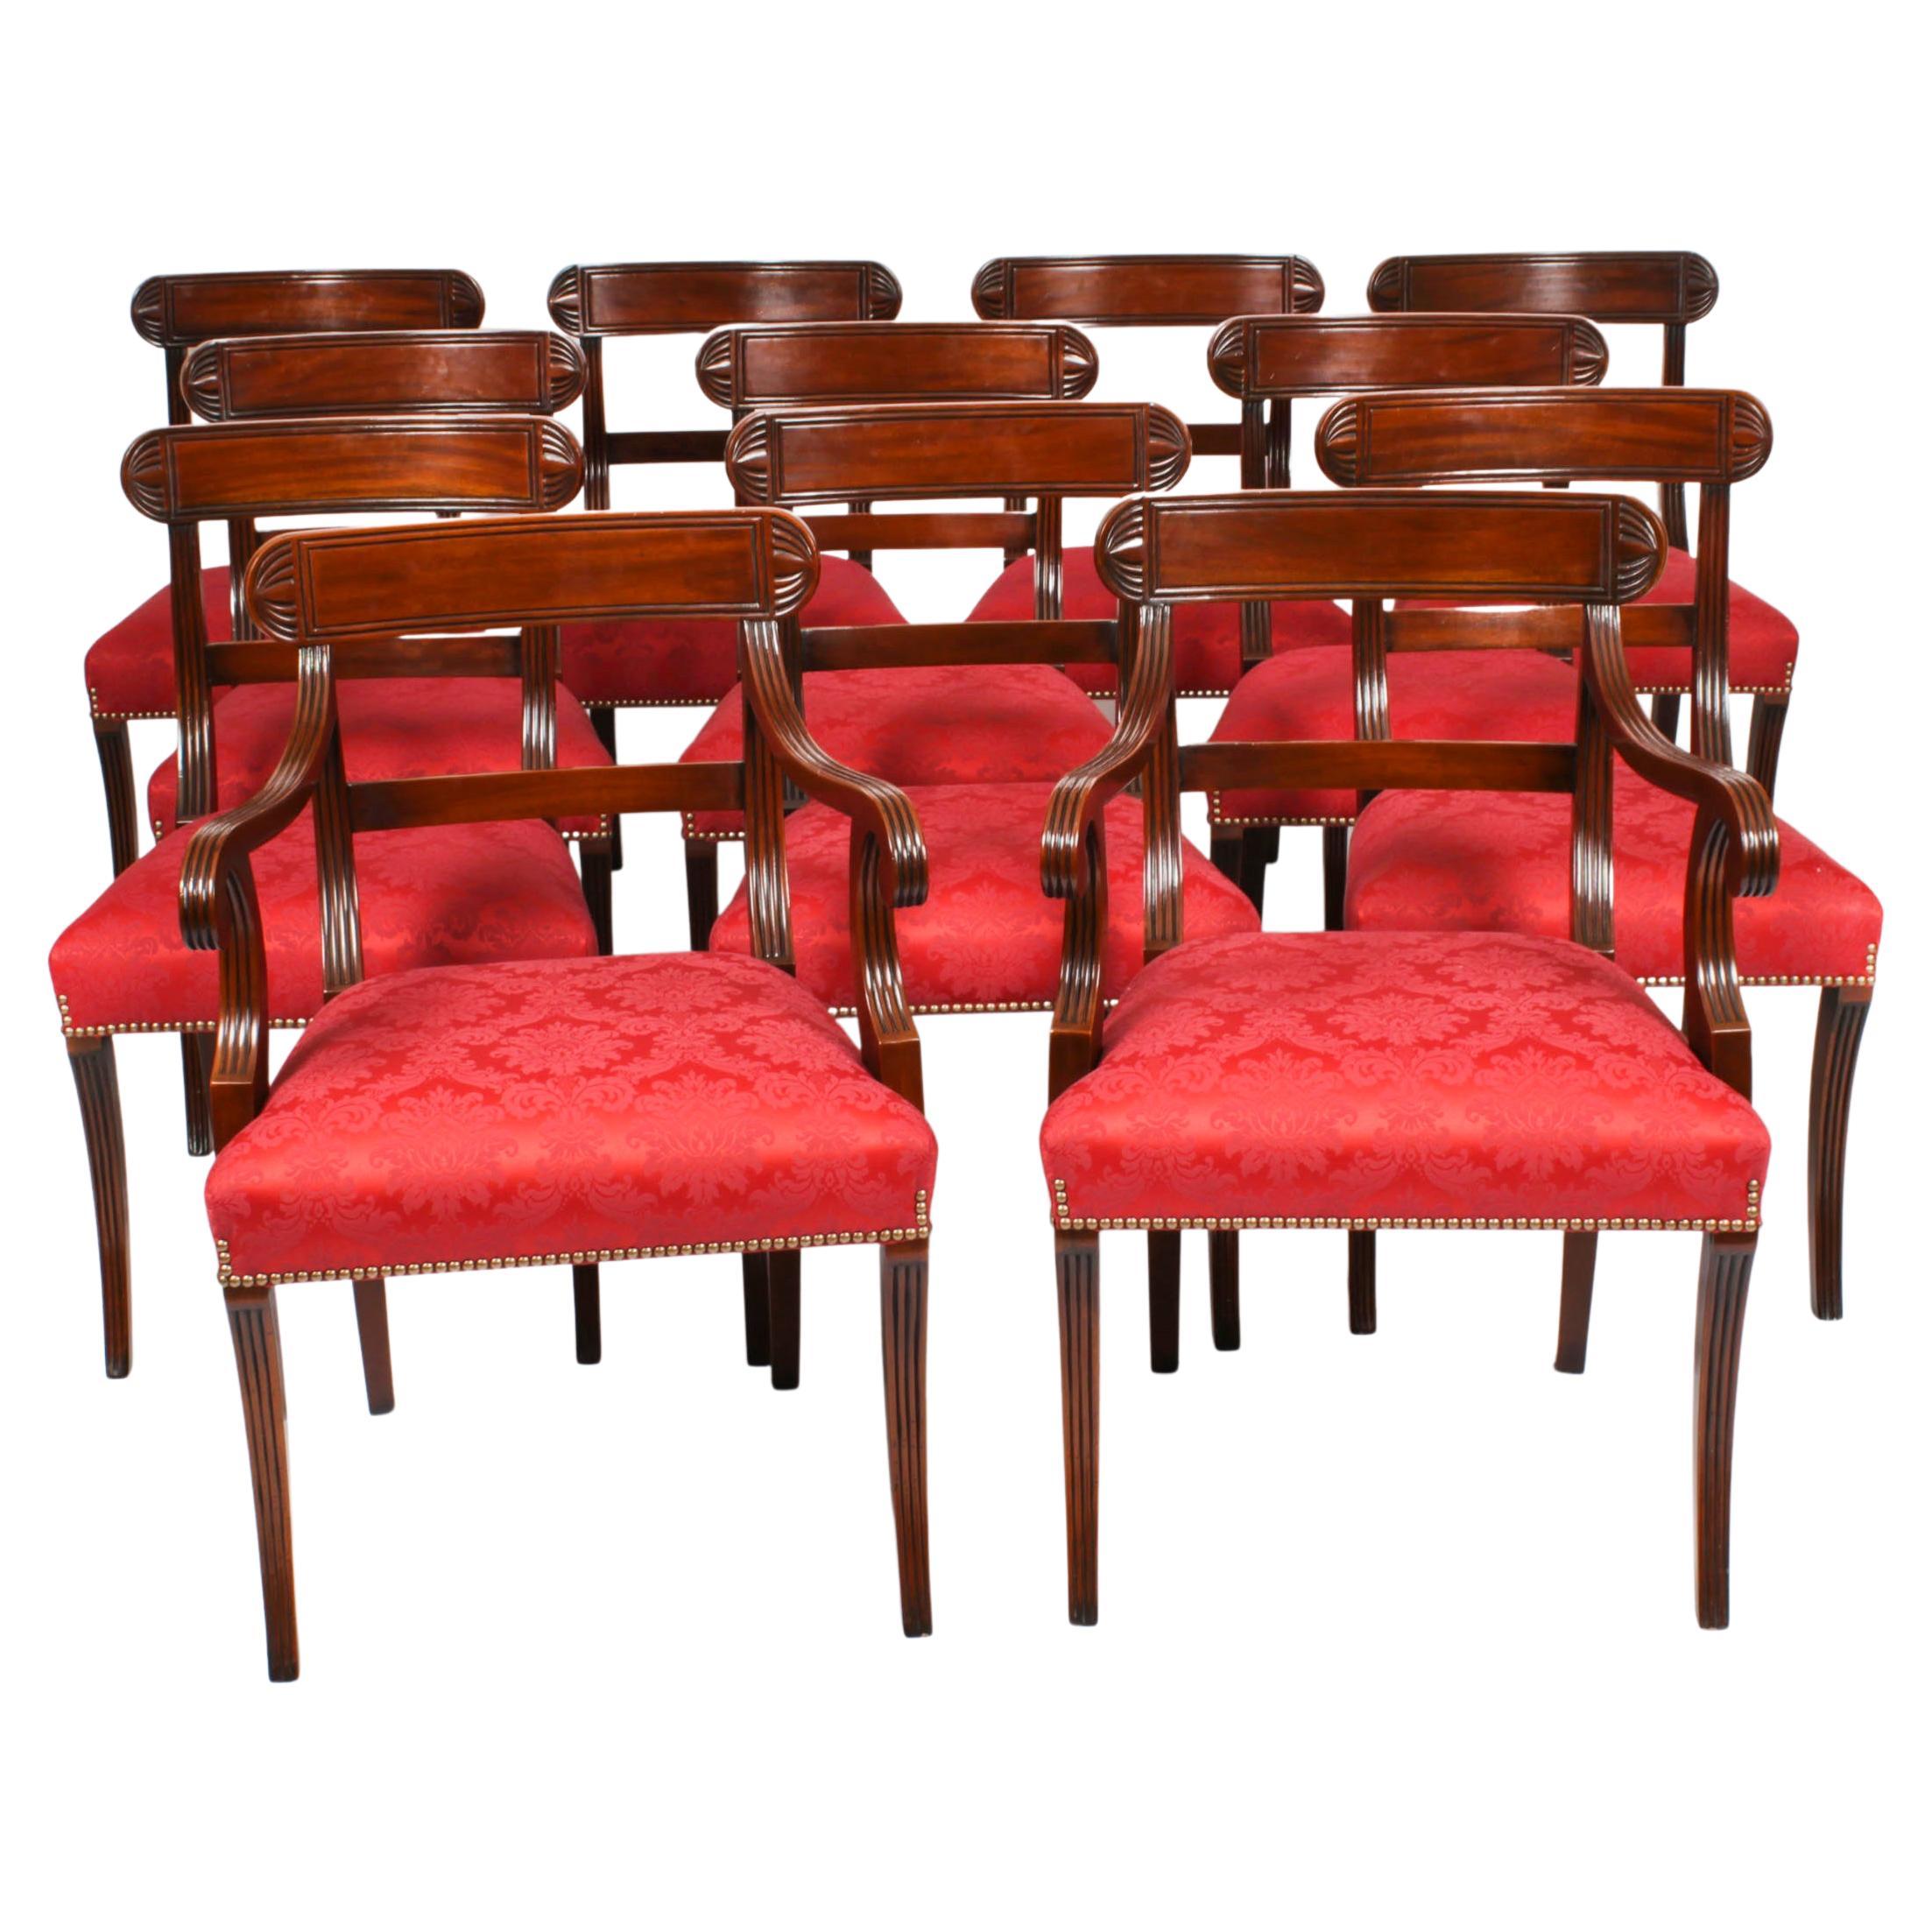 12 englische Regency-Revival-Esszimmerstühle mit Barrückenlehne, 20. Jahrhundert